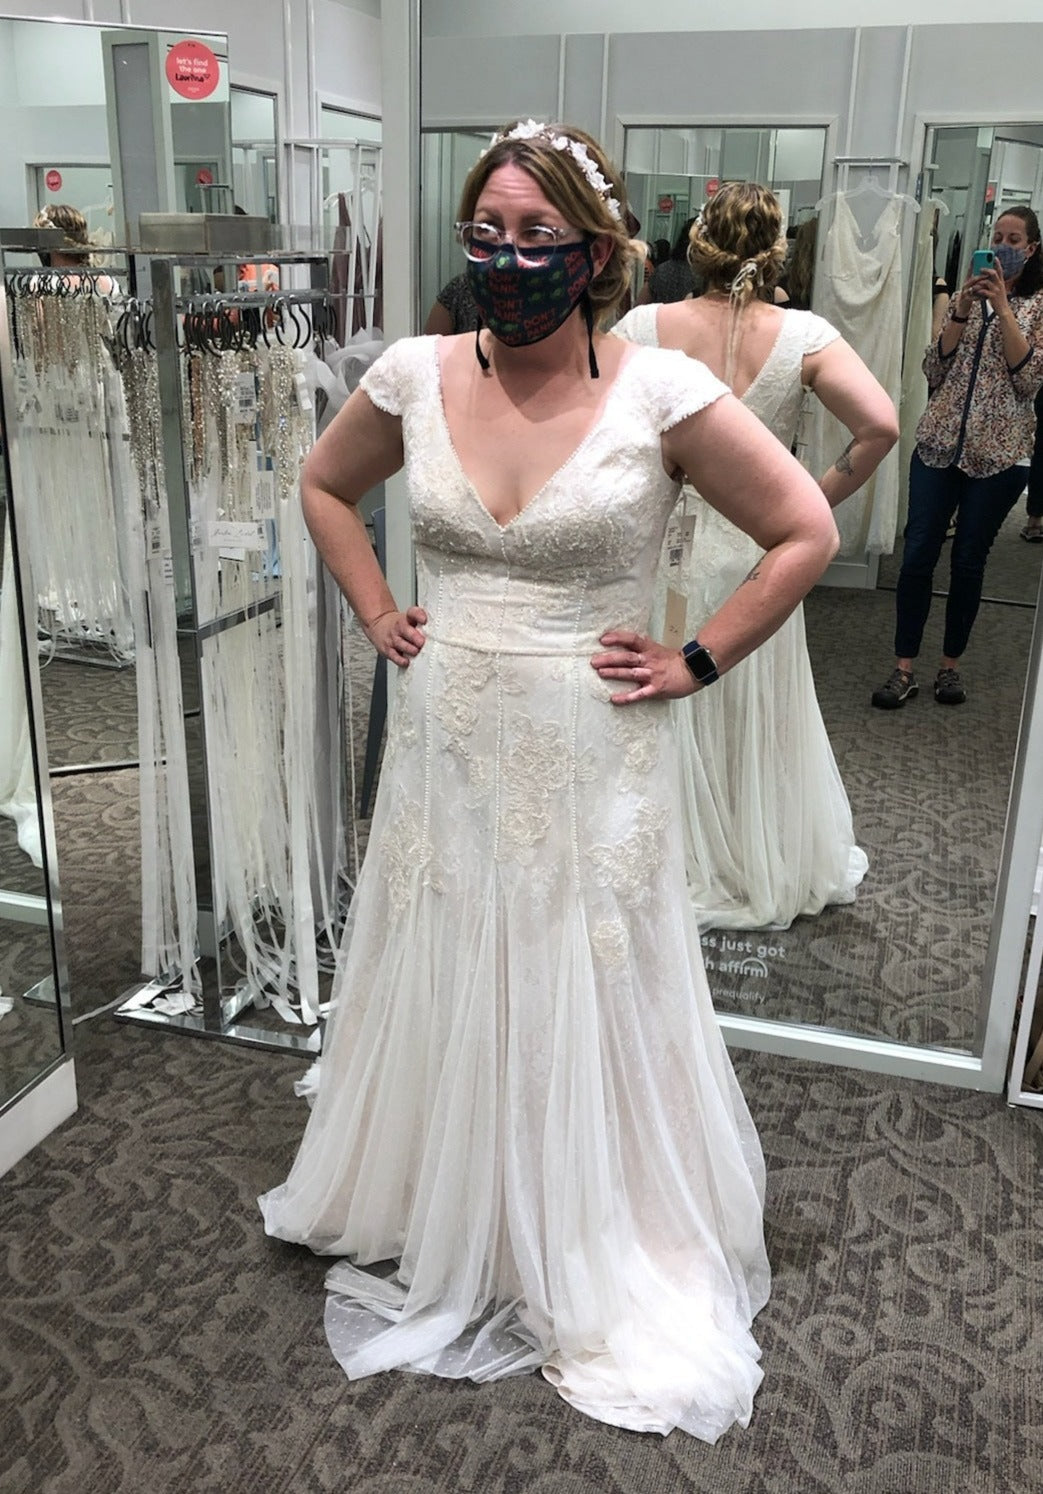 Melissa Sweet 'Cap Sleeve Point D'Espirit Wedding Dress' wedding dress size-14 NEW